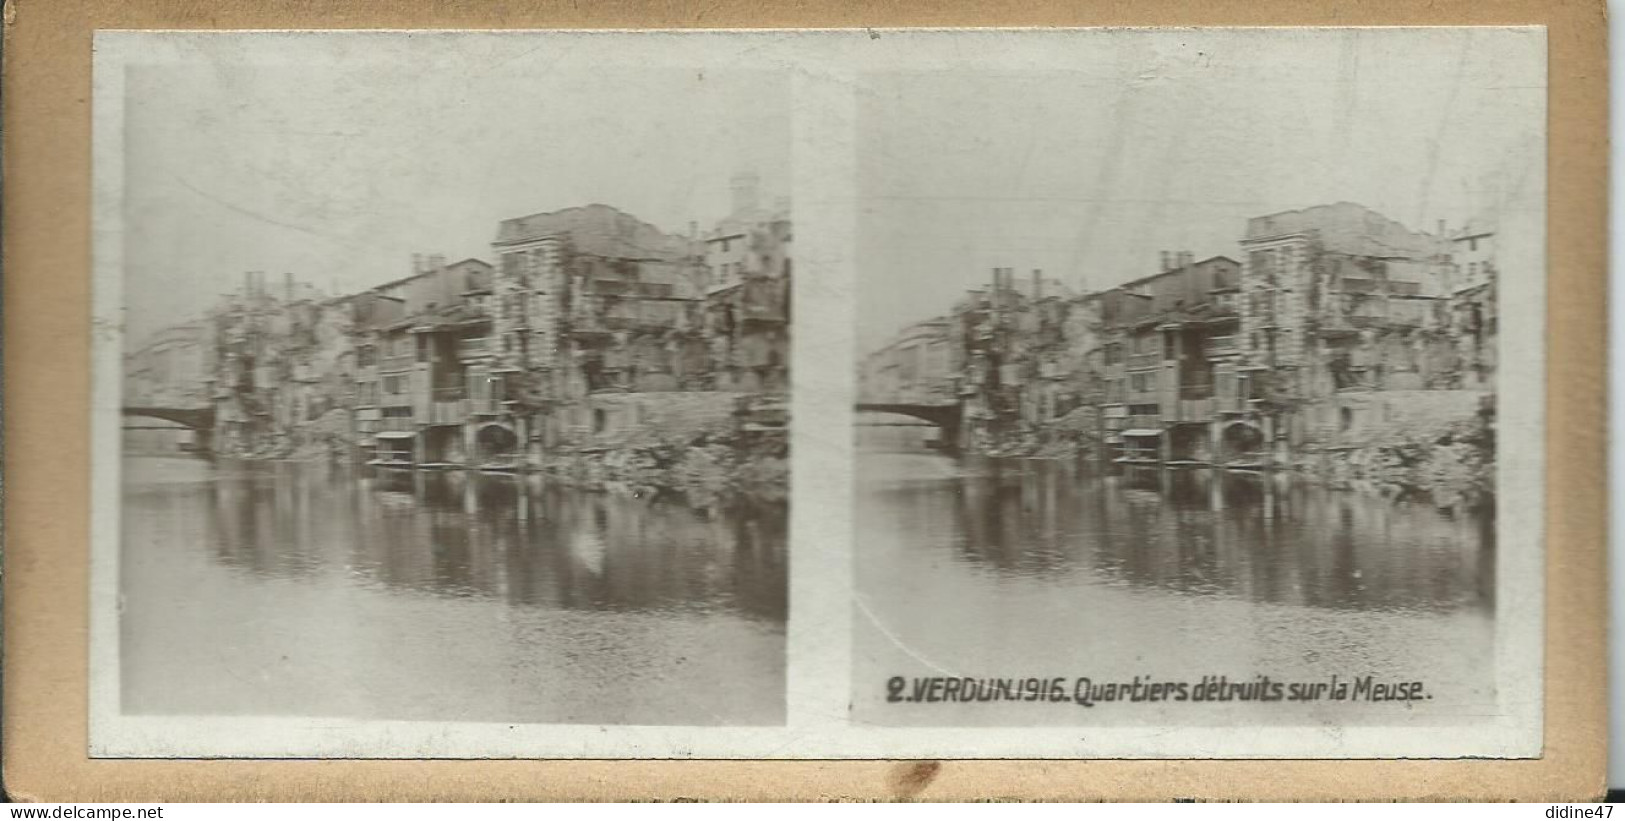 PHOTOS STÉRÉOSCOPIQUES - VERDUN - 1916 Quartier Détruit Sur La Meuse - Stereoscopic